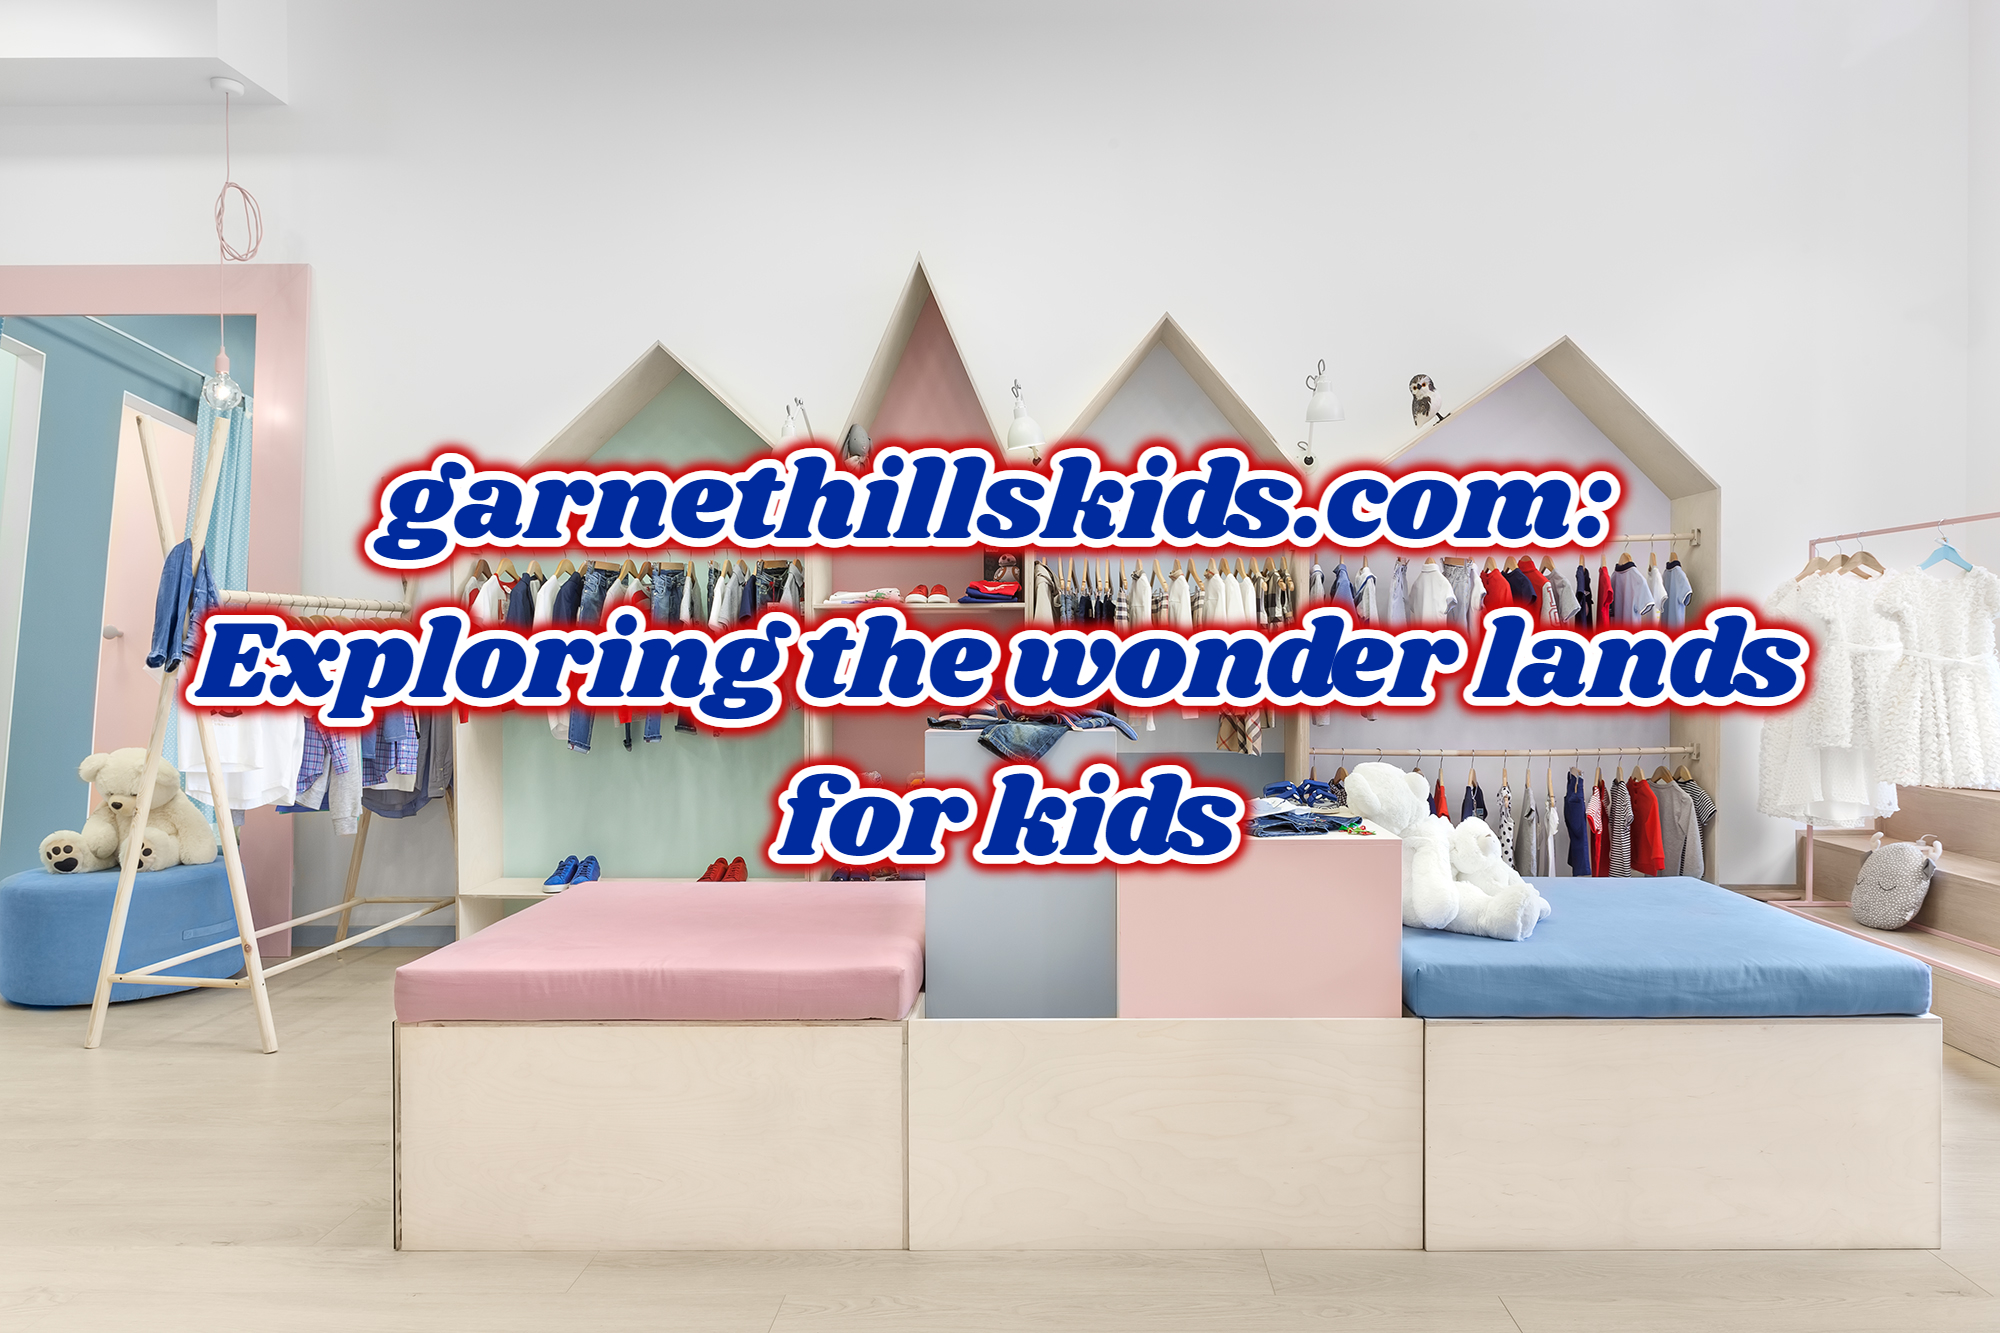 garnethillskids.com: Exploring the wonder lands for kids